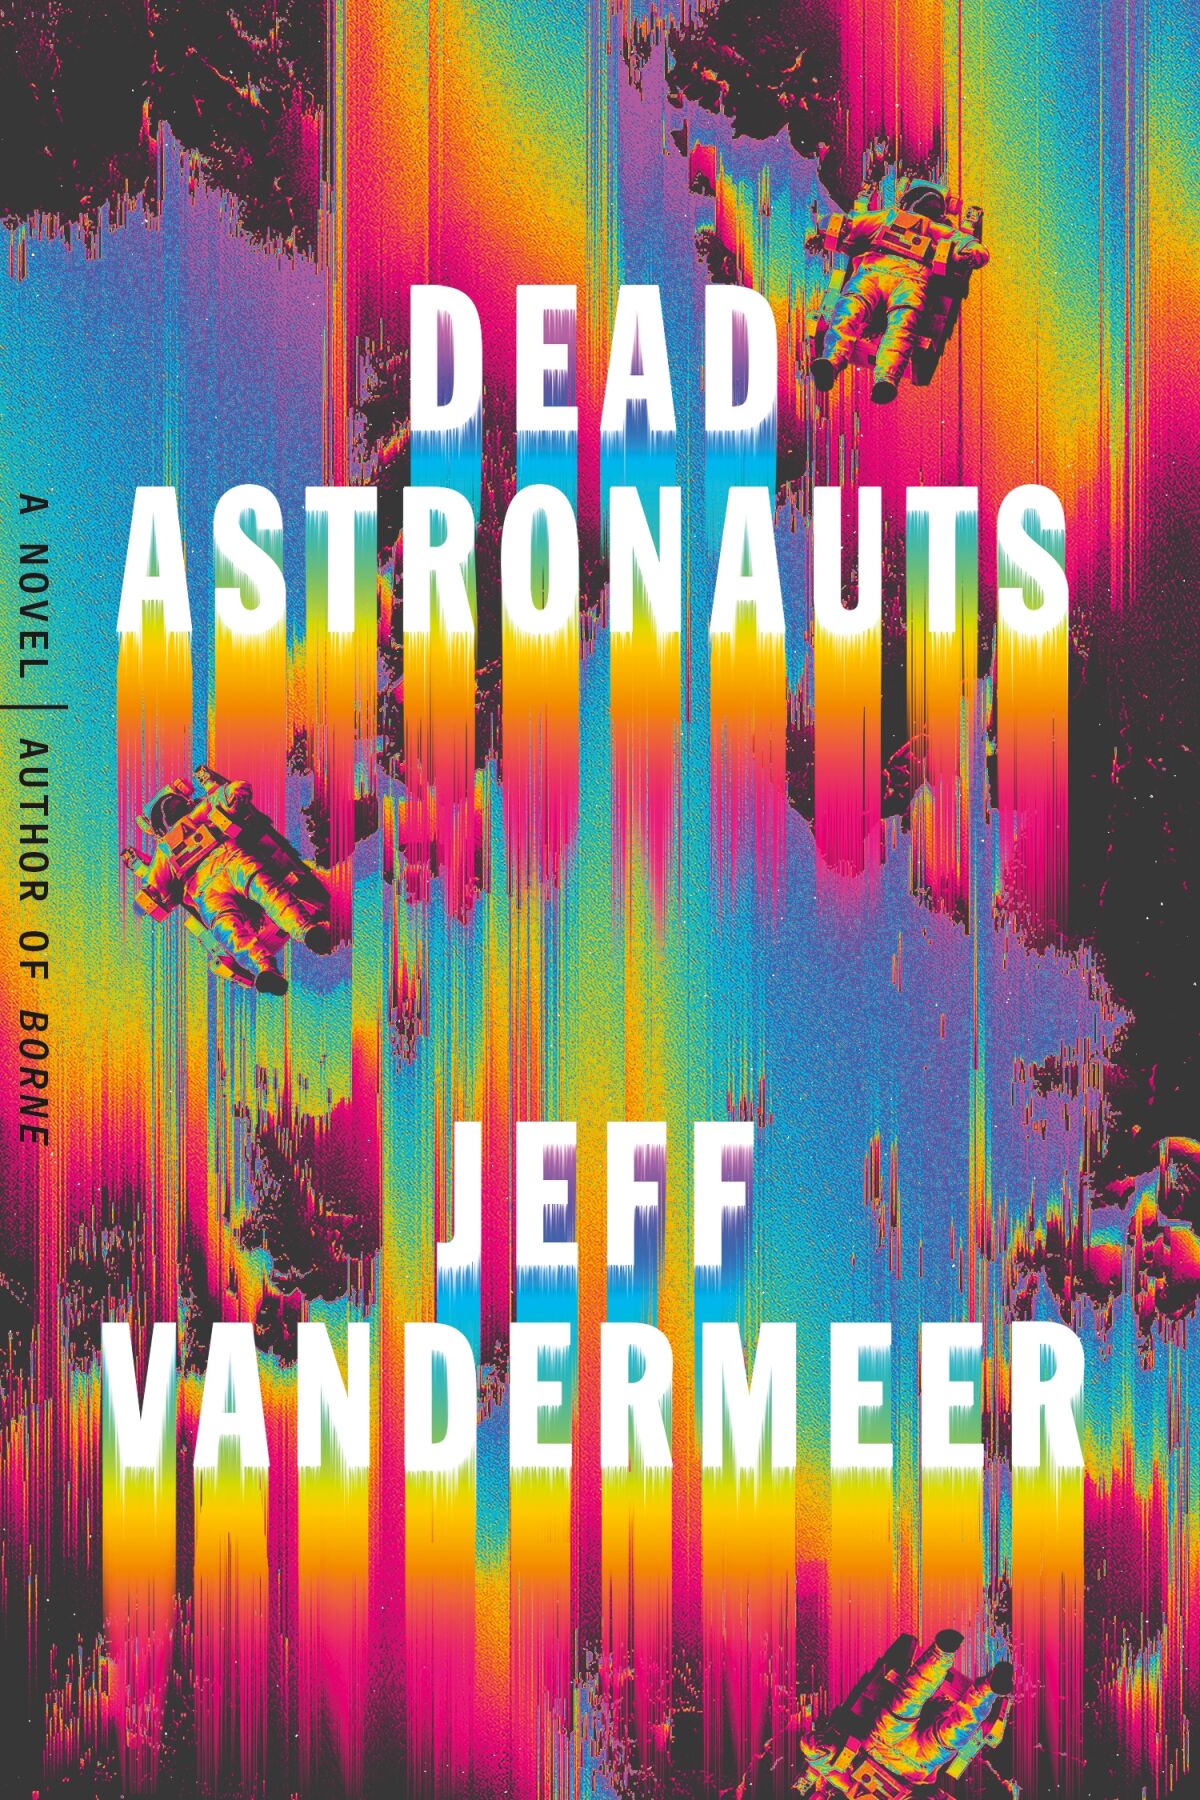 The book jacket for Jeff Vandermeer’s “Dead Astronauts.” 